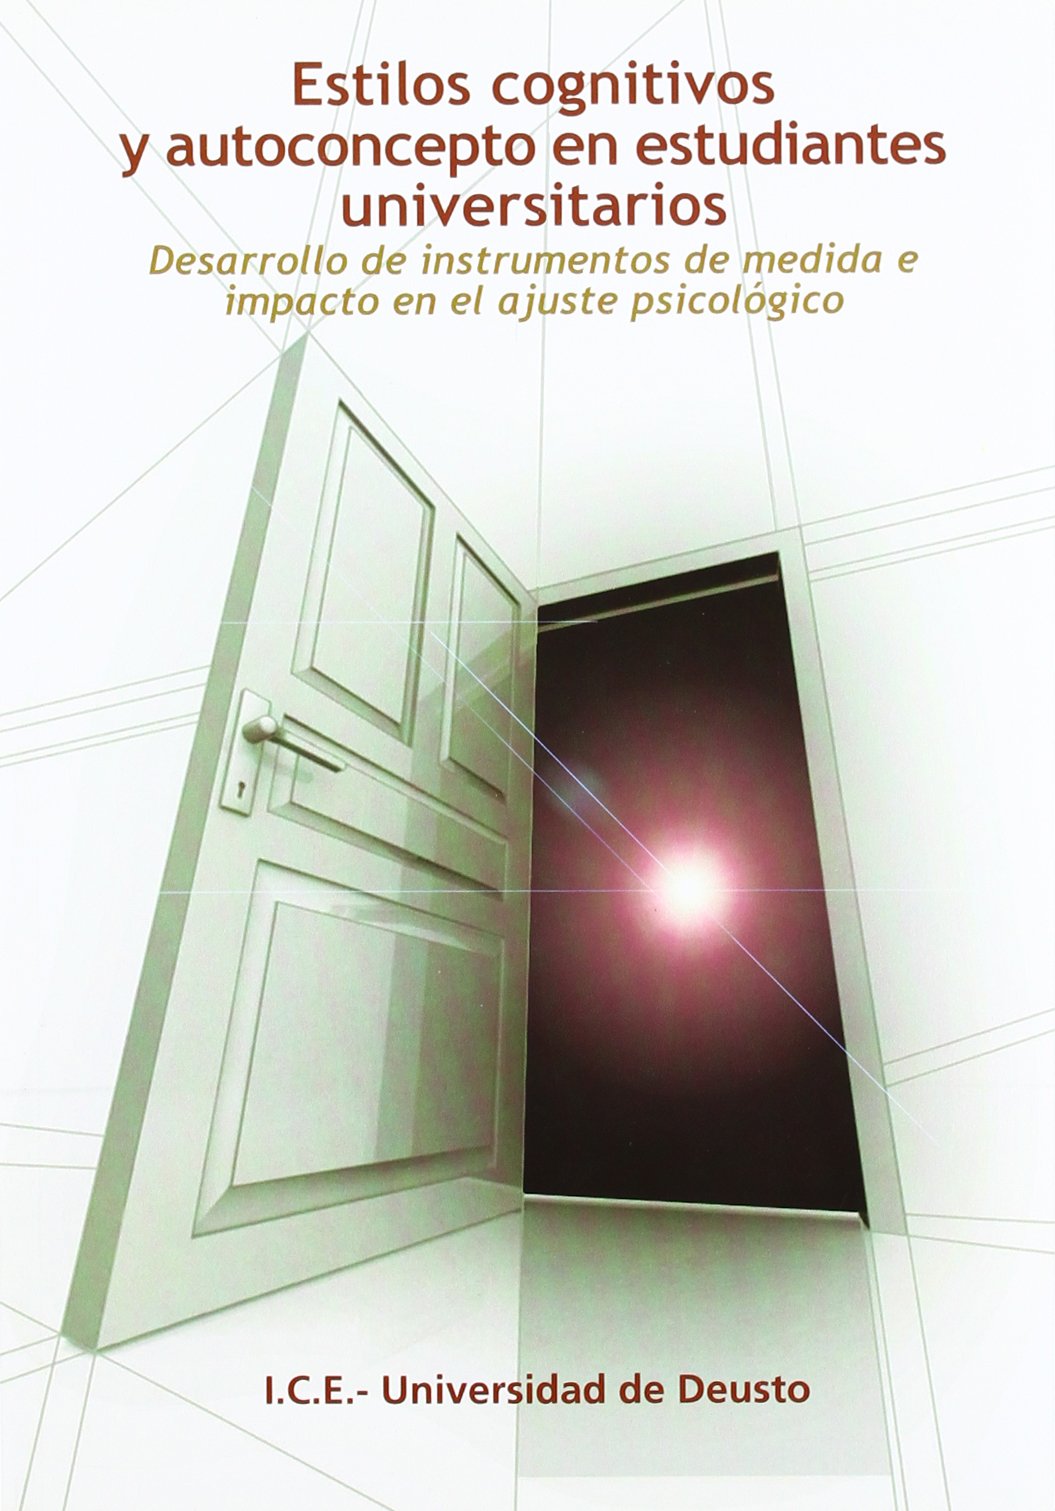 Imagen de portada del libro Estilos cognitivos y autoconcepto en estudiantes universitarios